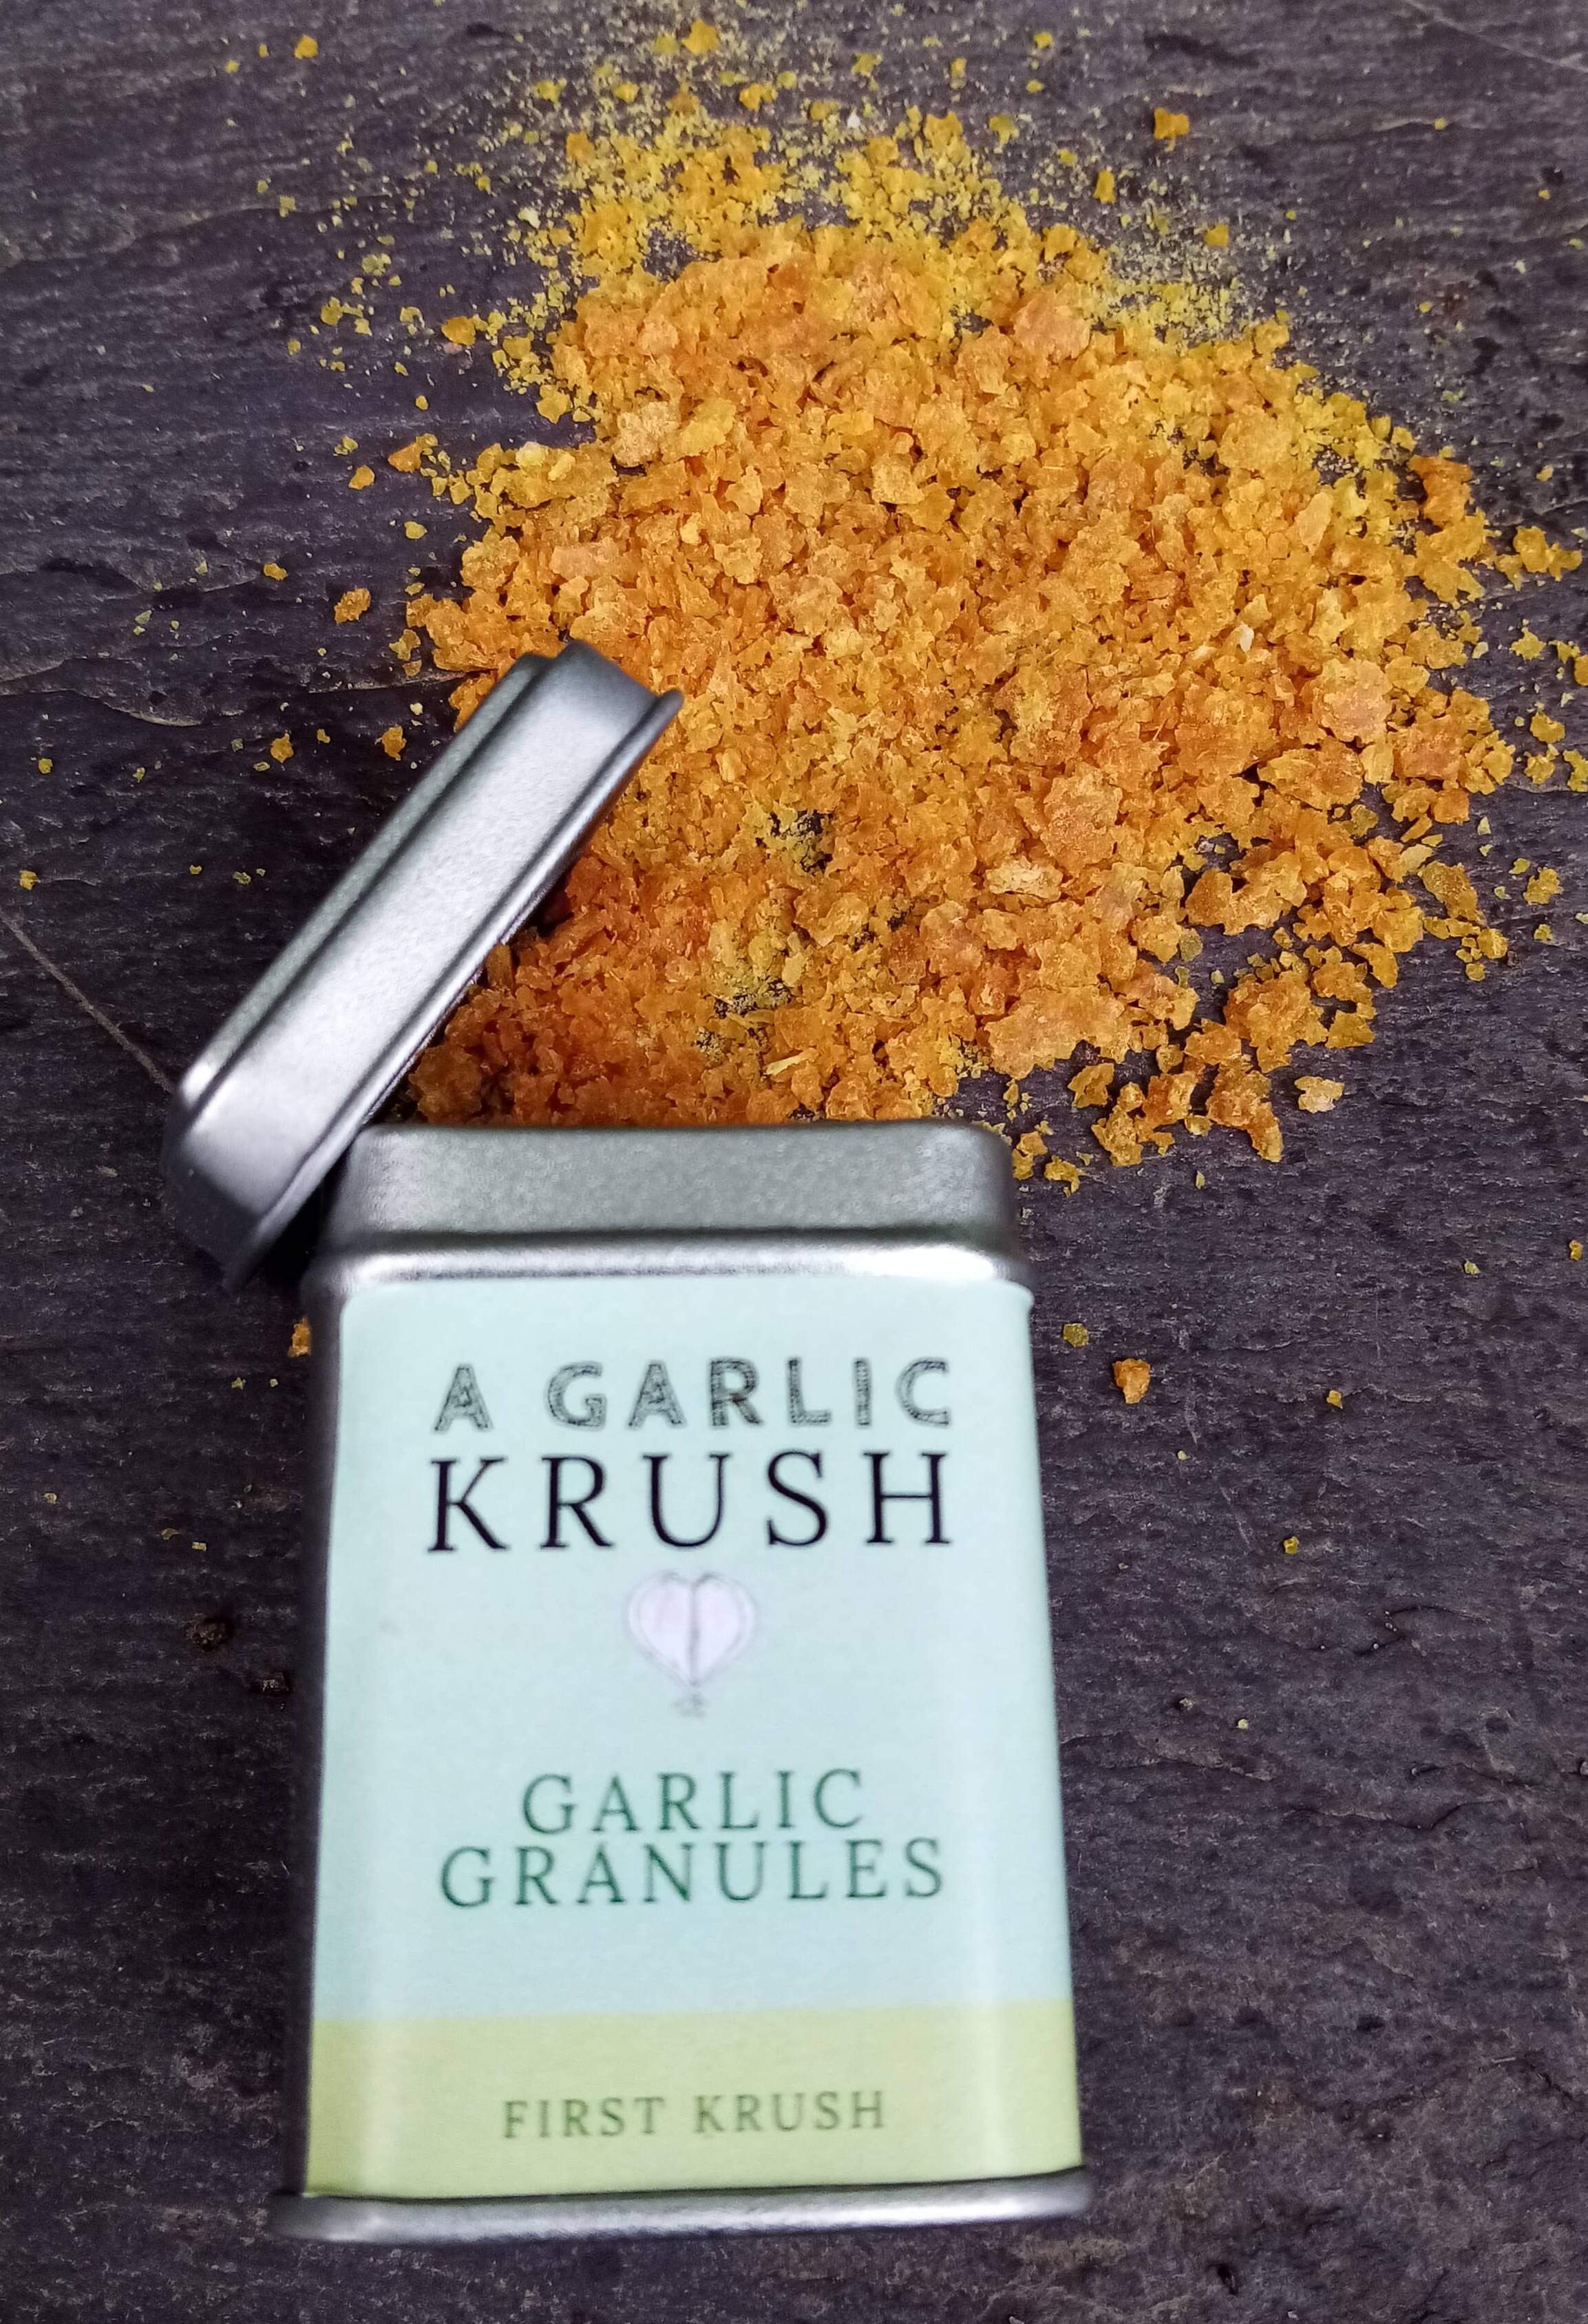 First Krush Garlic granules